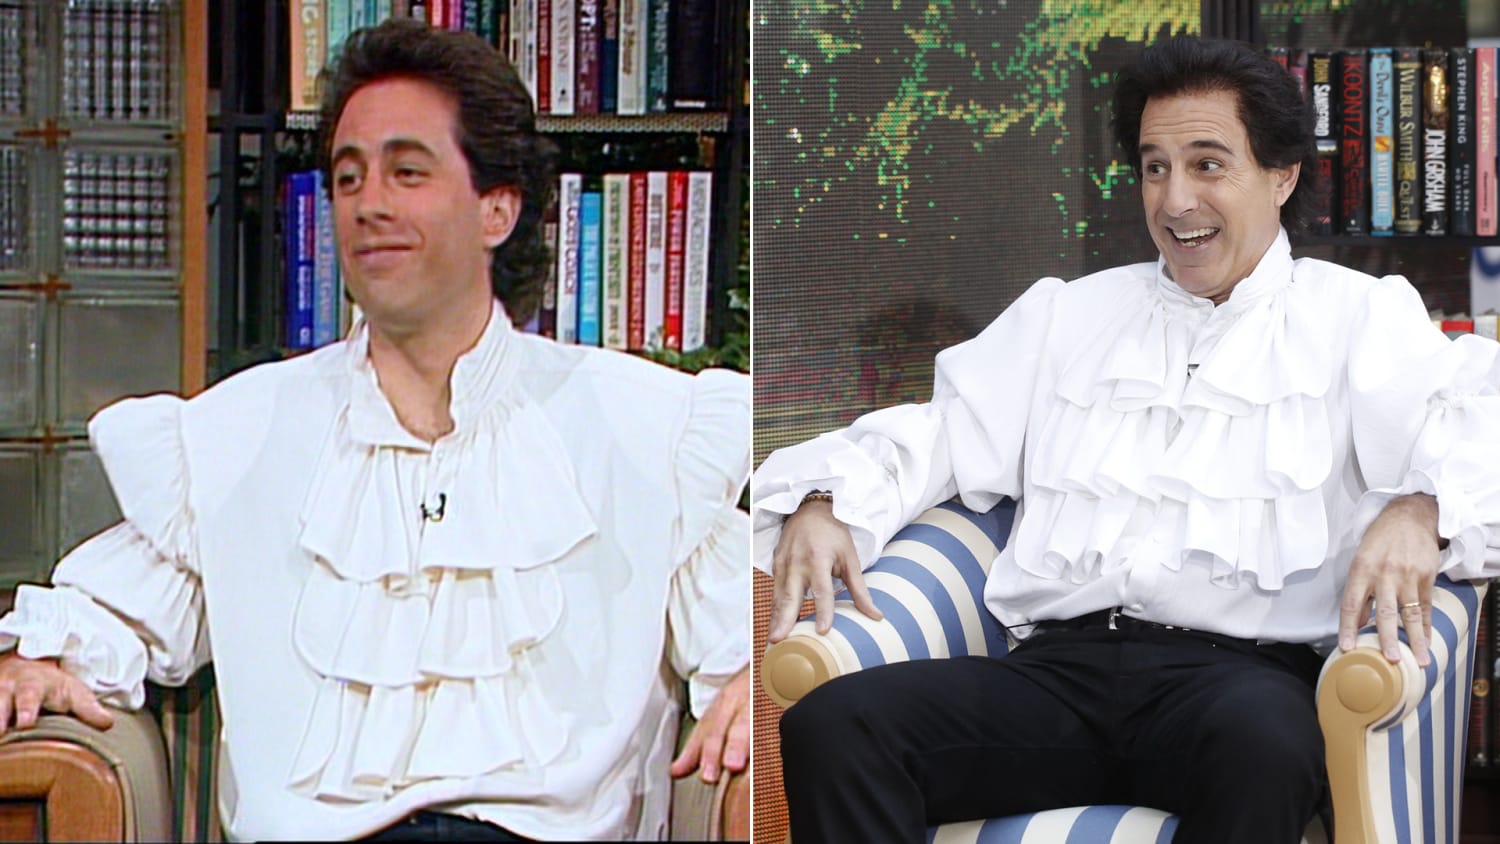 Matt Lauer becomes 'puffy shirt' Jerry Seinfeld for Halloween